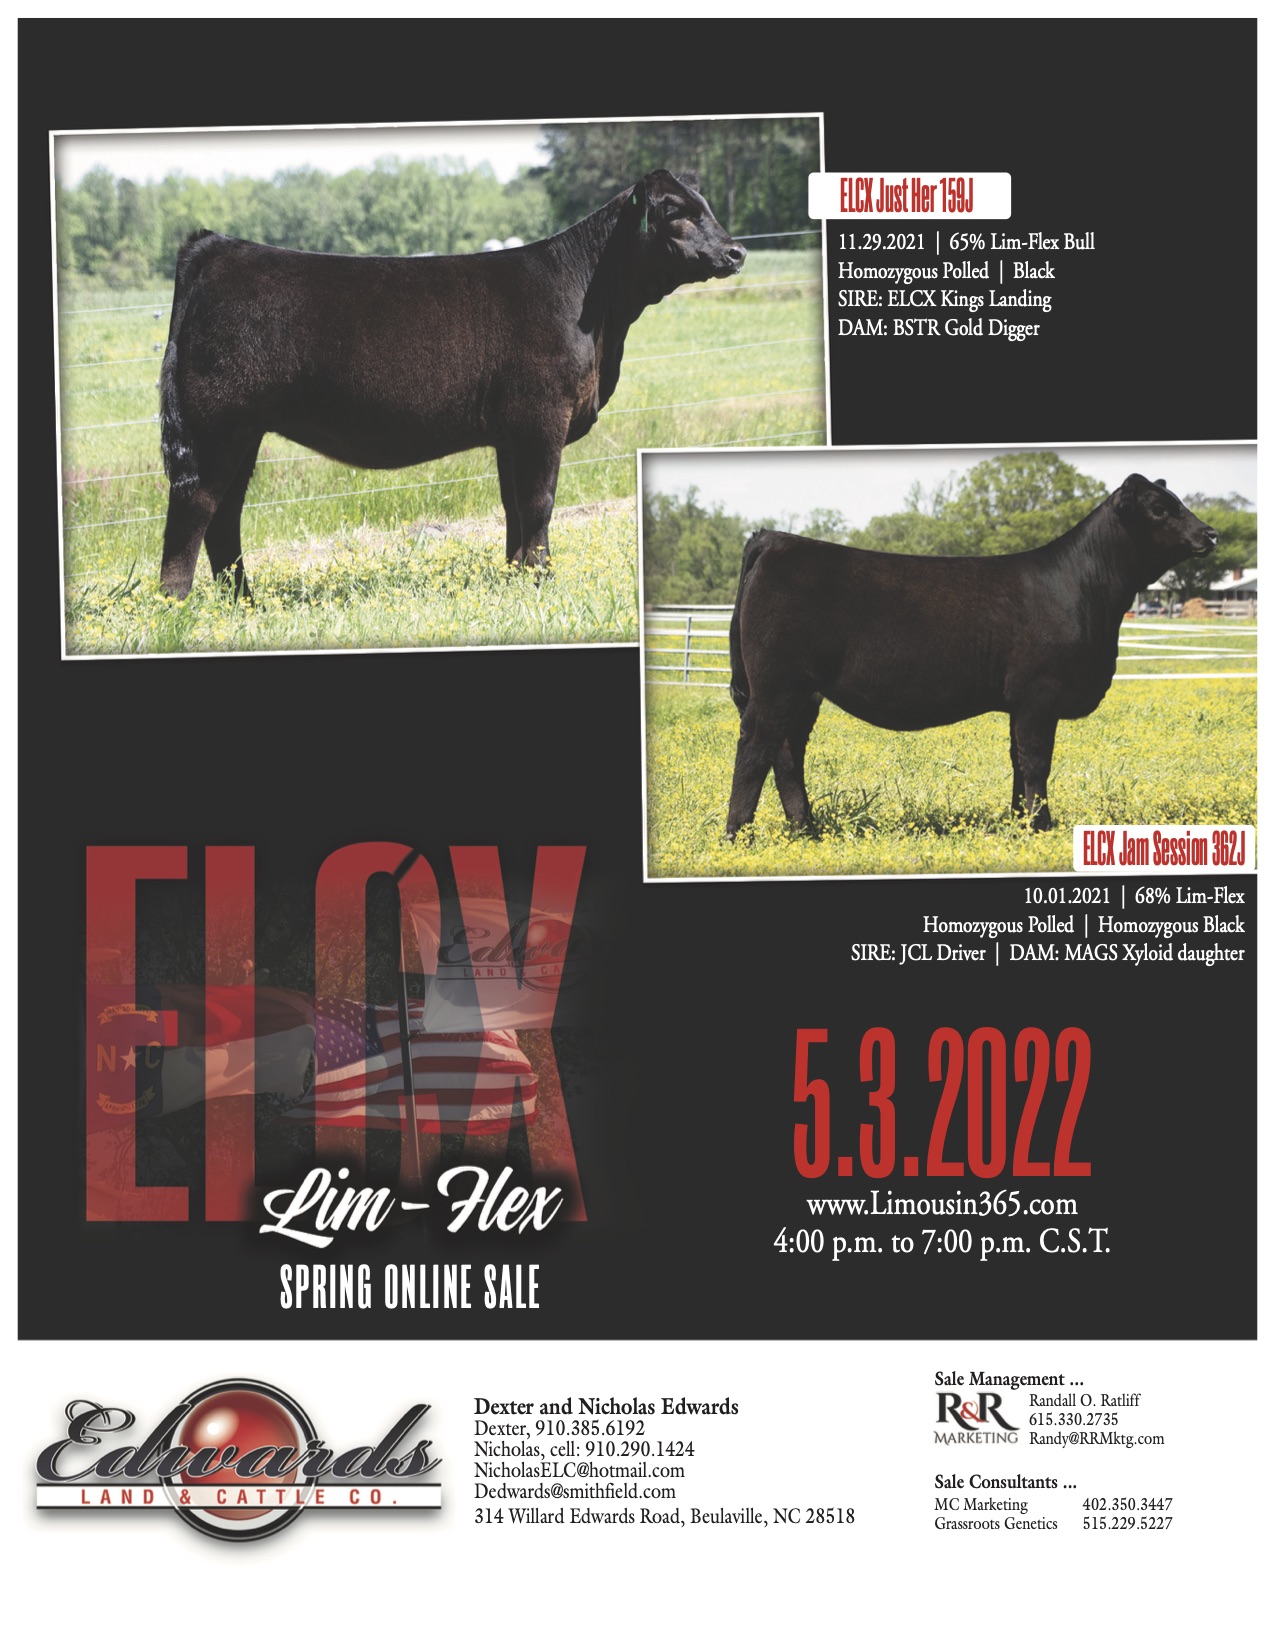 Edwards Land & Cattle Co. Spring Show Heifer Online Sale 5.3.2022